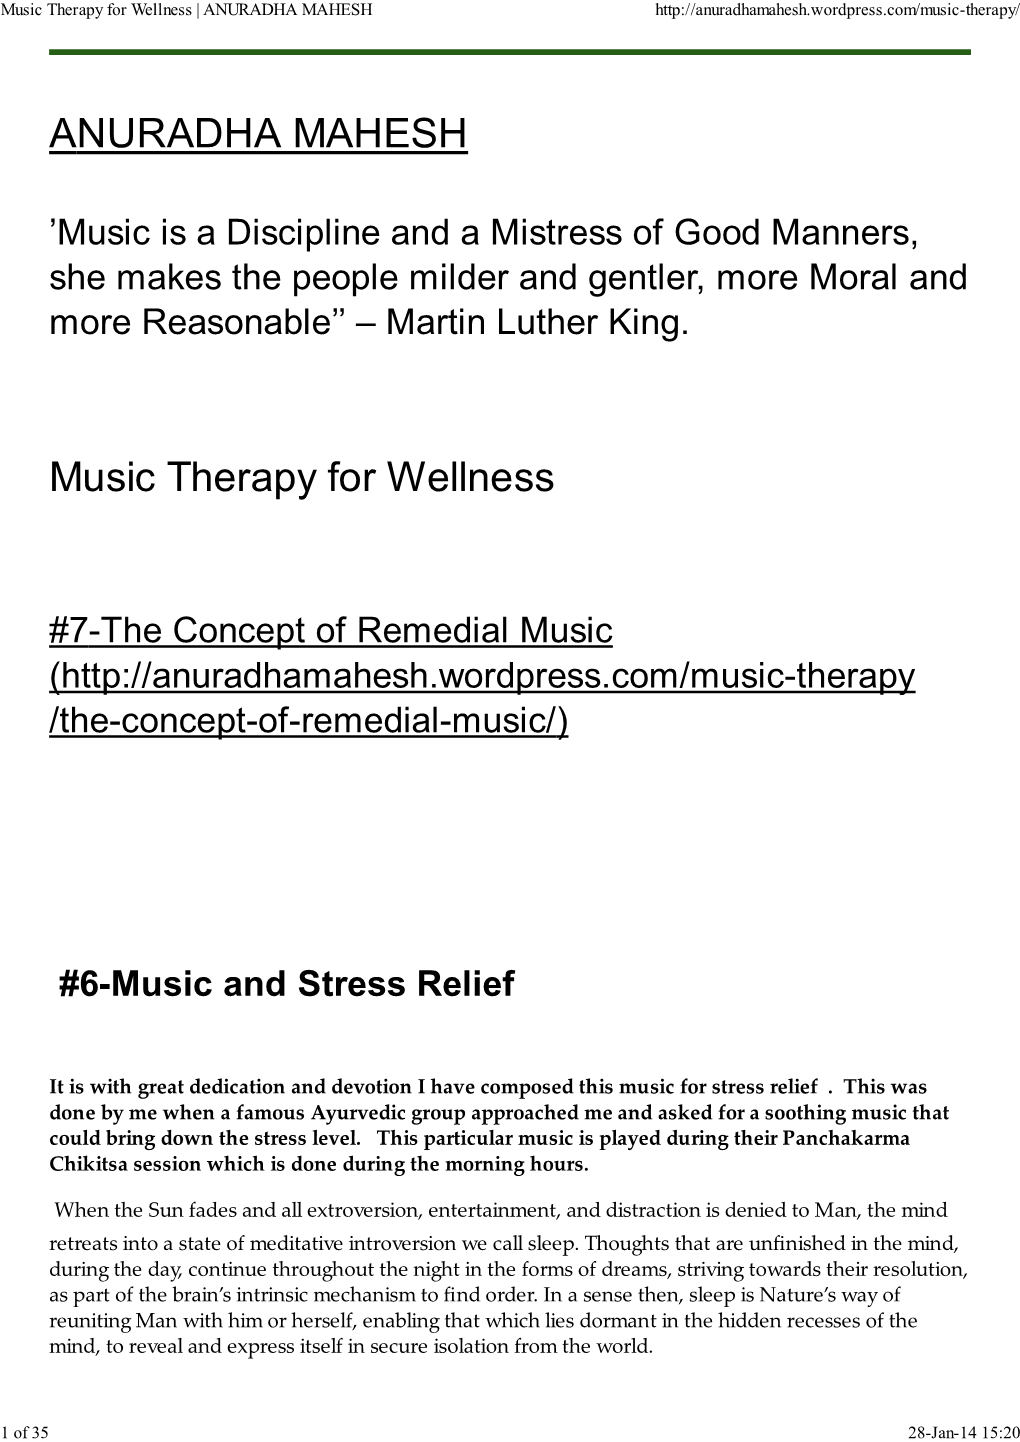 ANURADHA MAHESH Music Therapy for Wellness